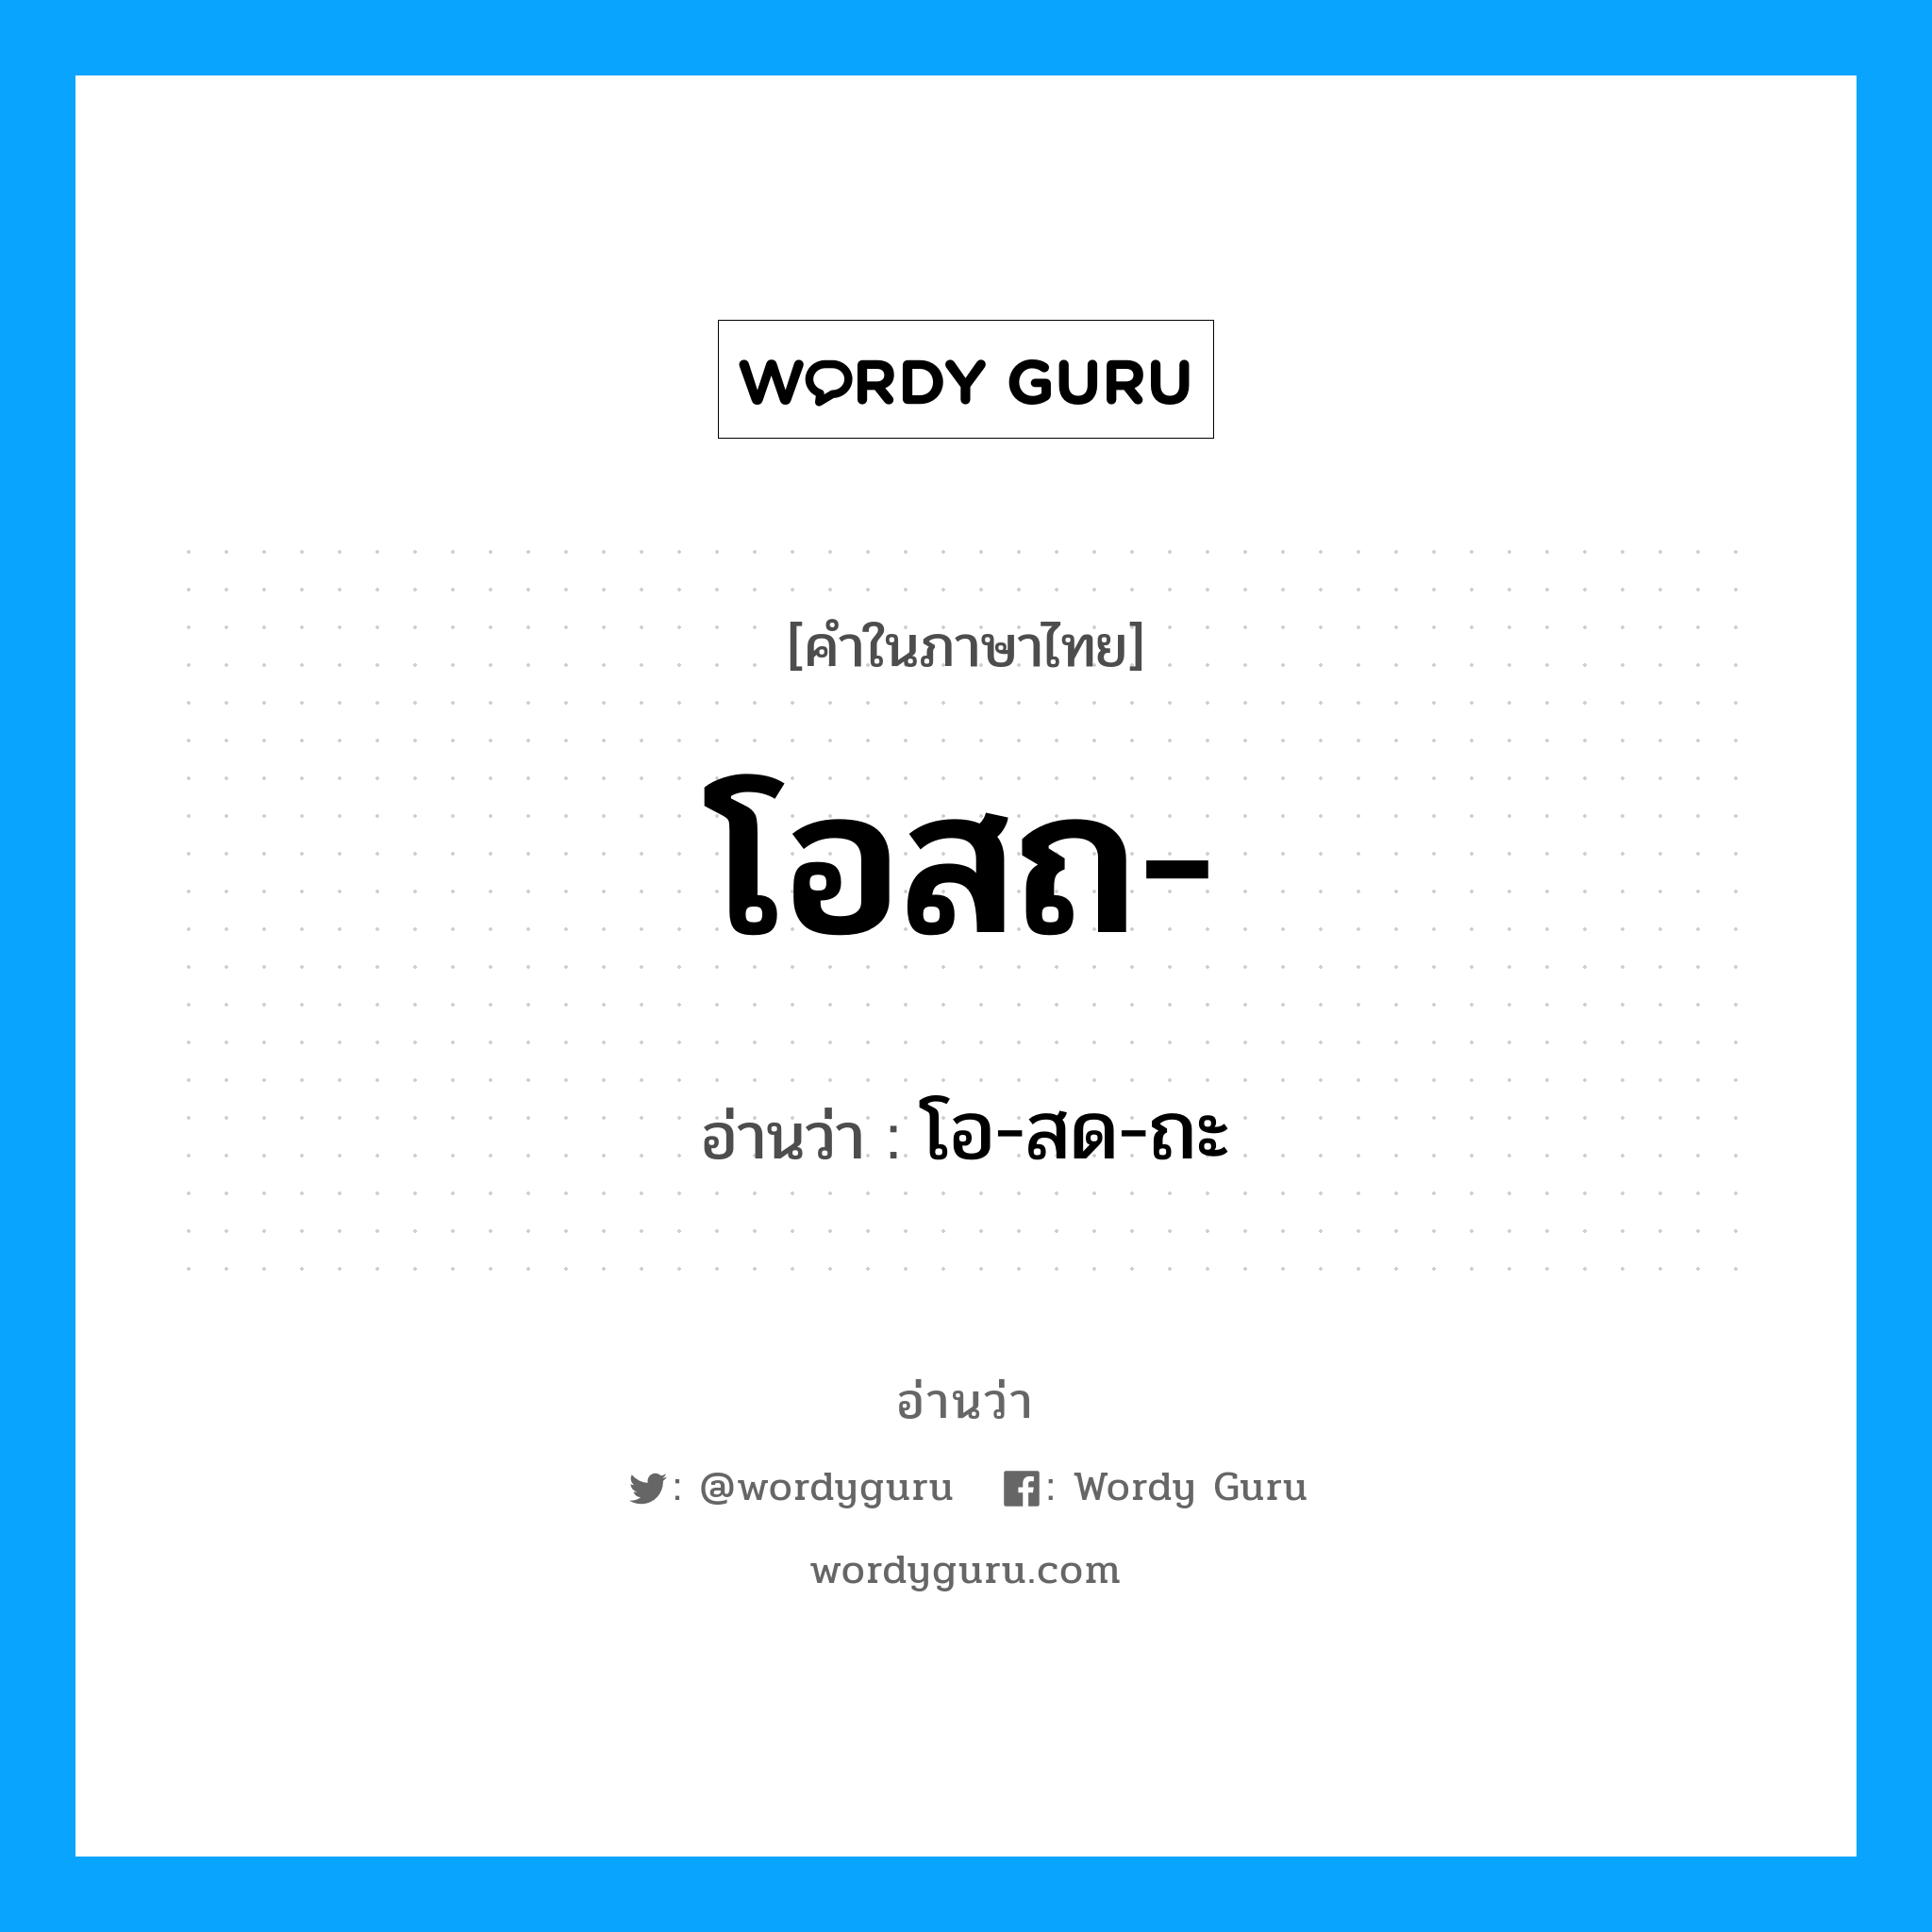 โอ-สด-ถะ เป็นคำอ่านของคำไหน?, คำในภาษาไทย โอ-สด-ถะ อ่านว่า โอสถ-